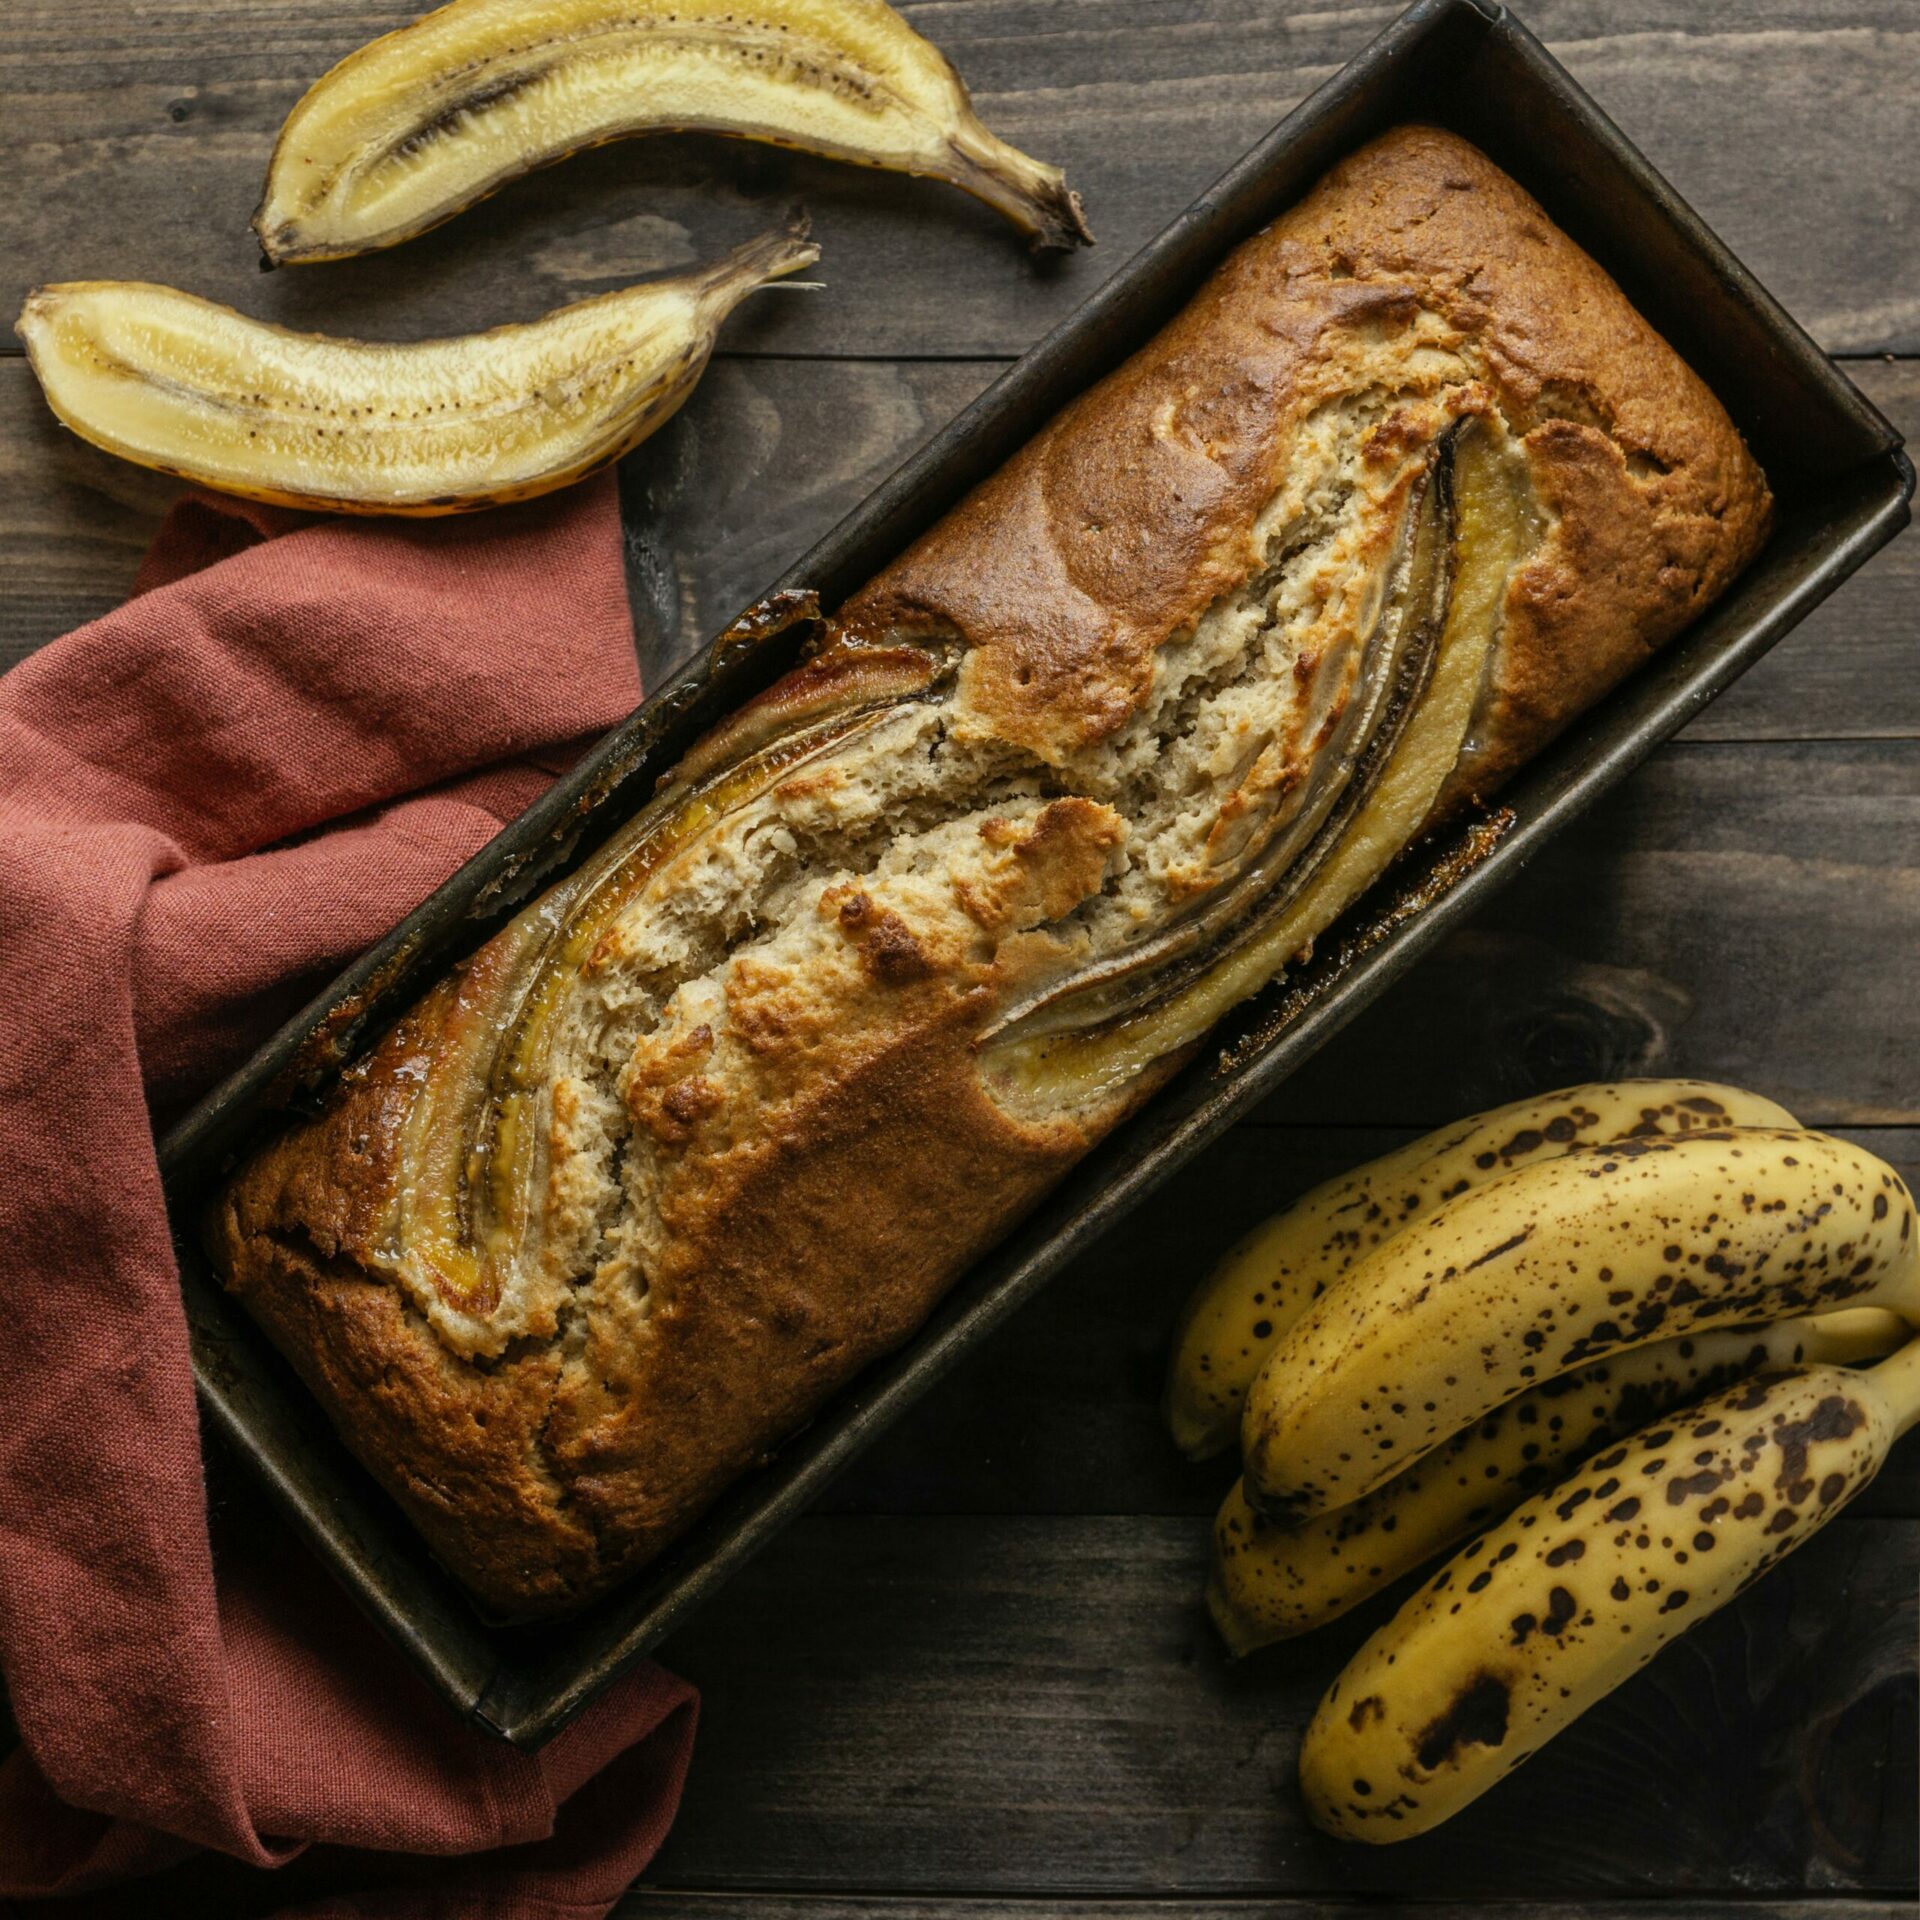 Baked Treats: The Vegan Banana Bread Recipe – An Italian Version